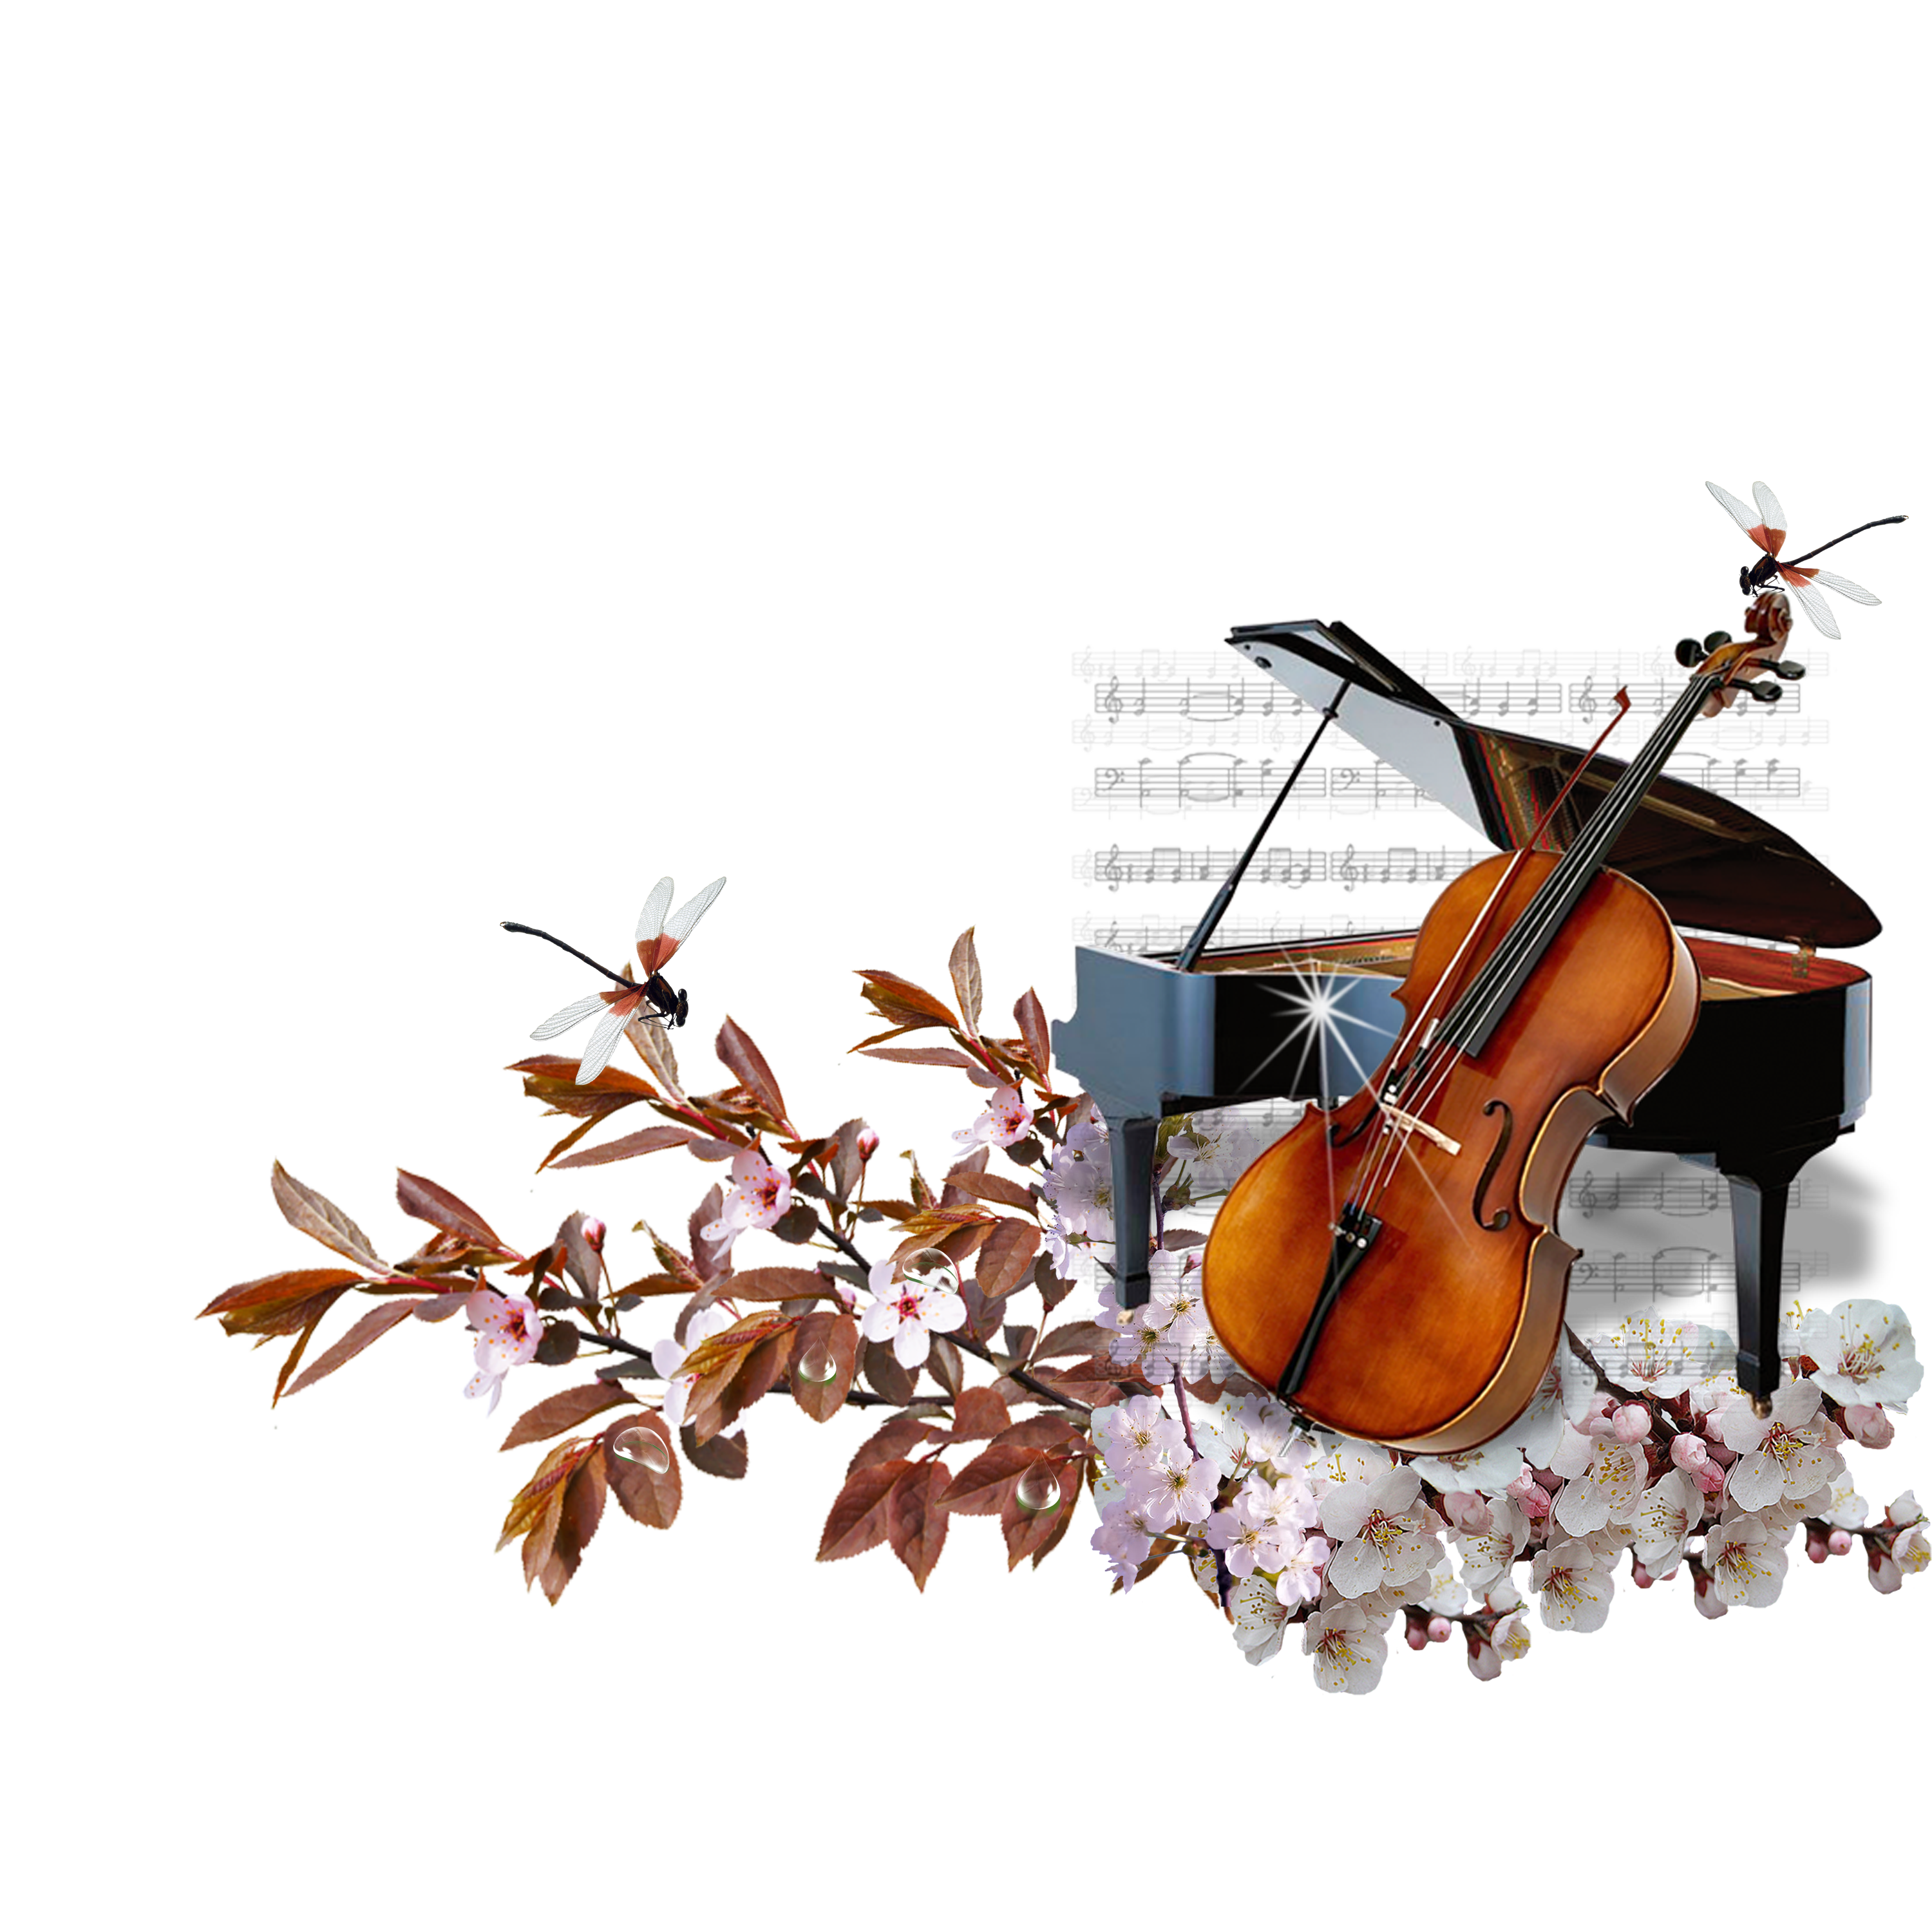 Arquivo de violoncelo de instrumentos musicais